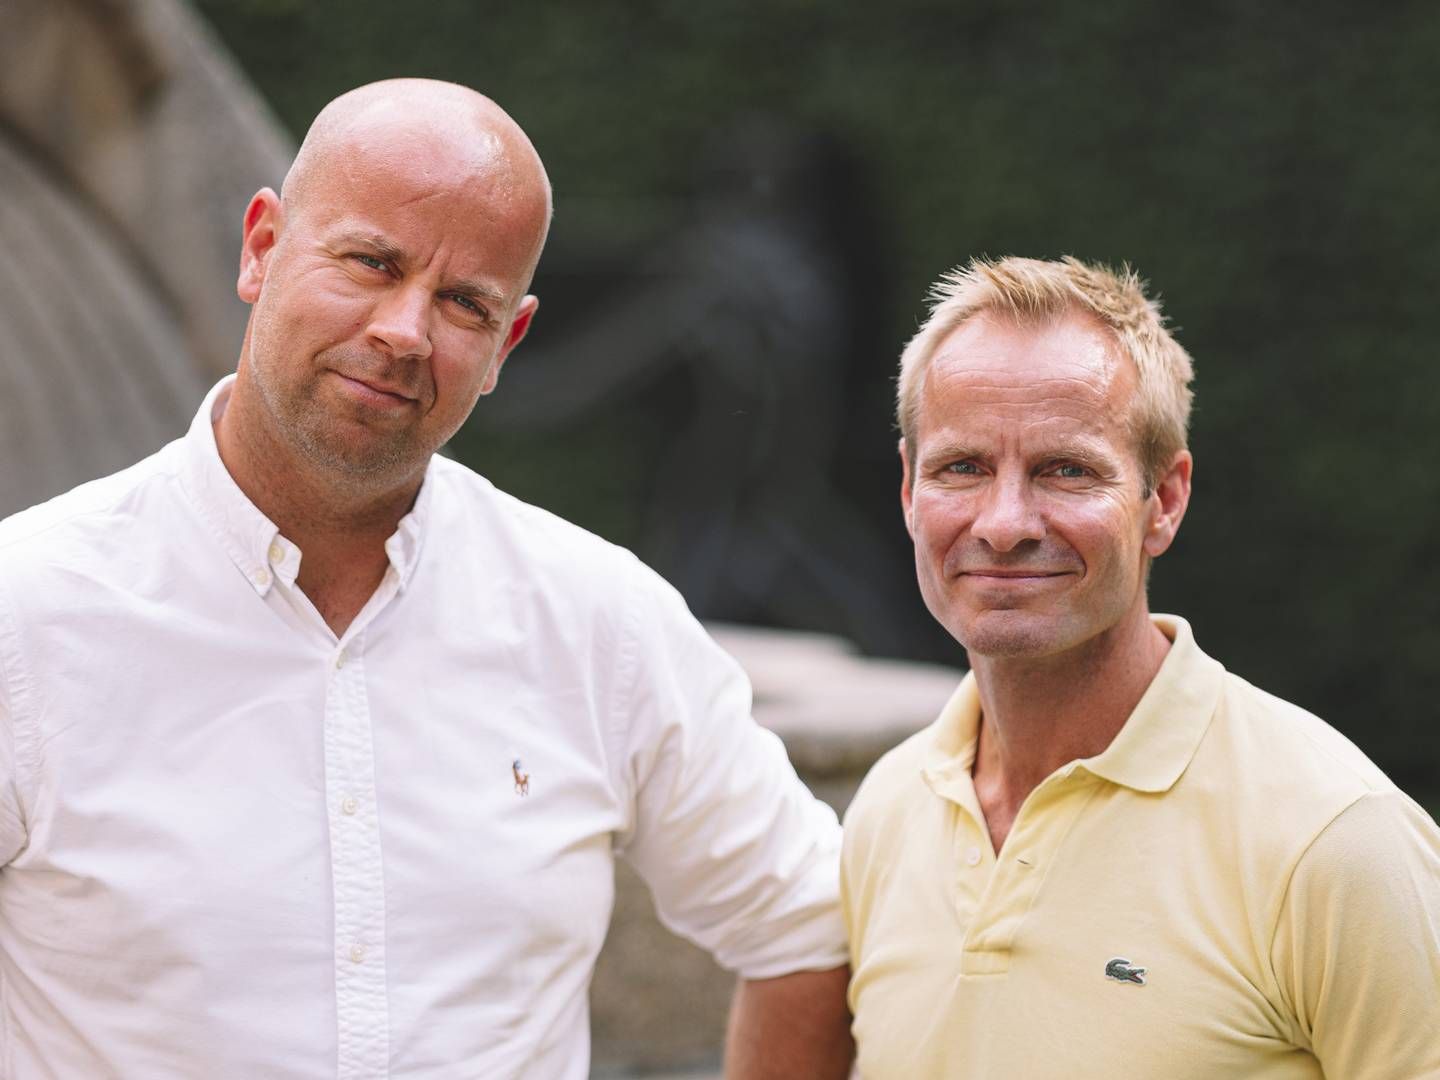 ANSETTER: Adm. direktør i Veslefrikk, Tom André Svenning-Gultvedt, ansetter sin tidligere Solon-kollega Jakob A. Lind.